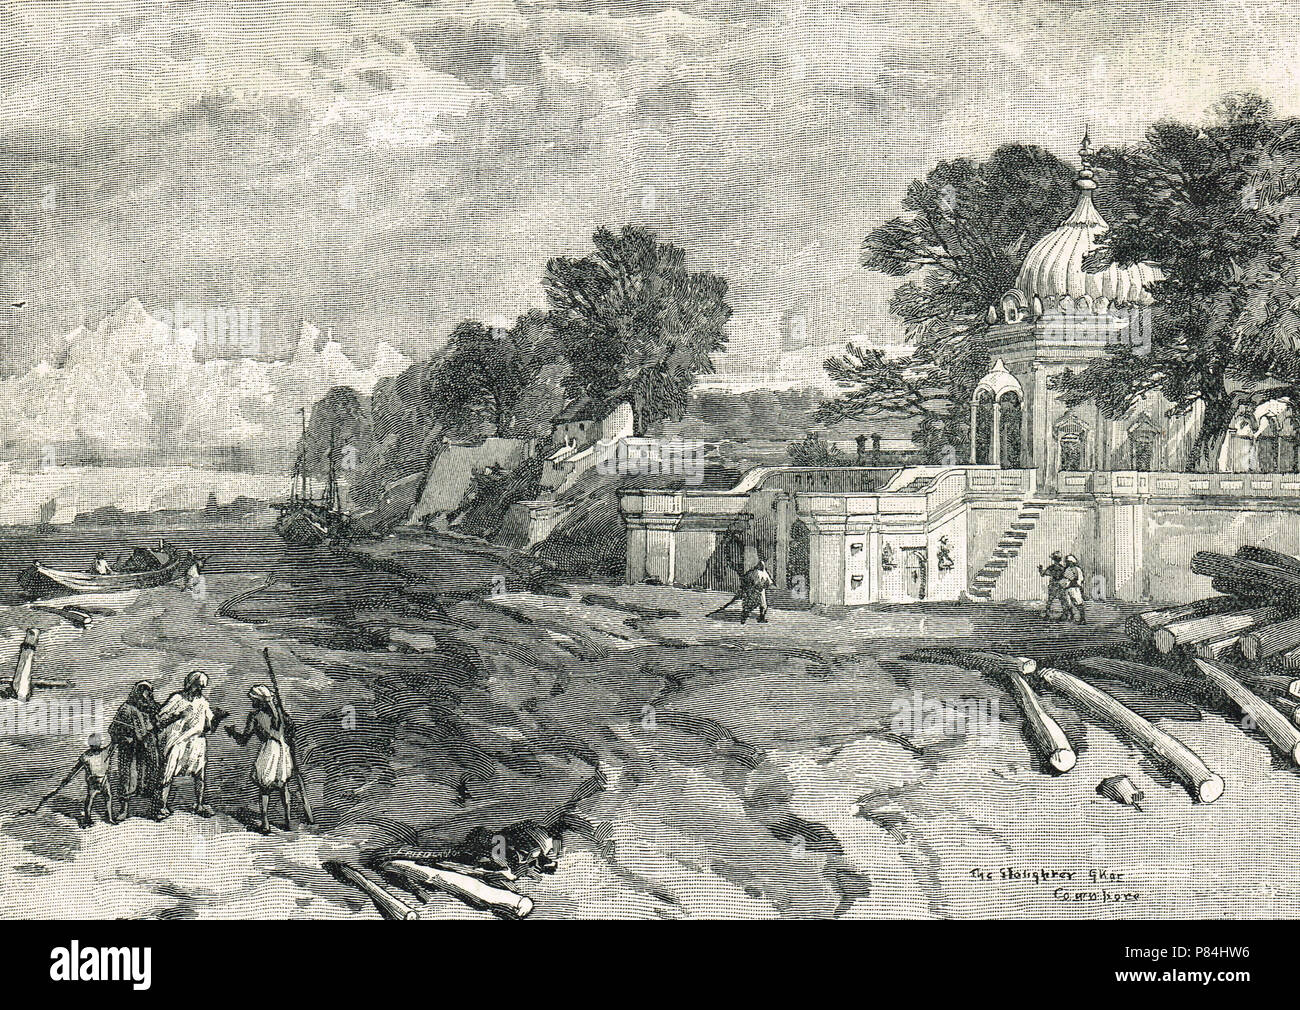 La macellazione Ghat, o un massacro Ghat, Cawnpore (presente giorno Kanpur), India. Sito della macellazione di superstiti dell assedio di Cawnpore, il 27 giugno 1857, durante la Ribellione indiana del 1857 Foto Stock